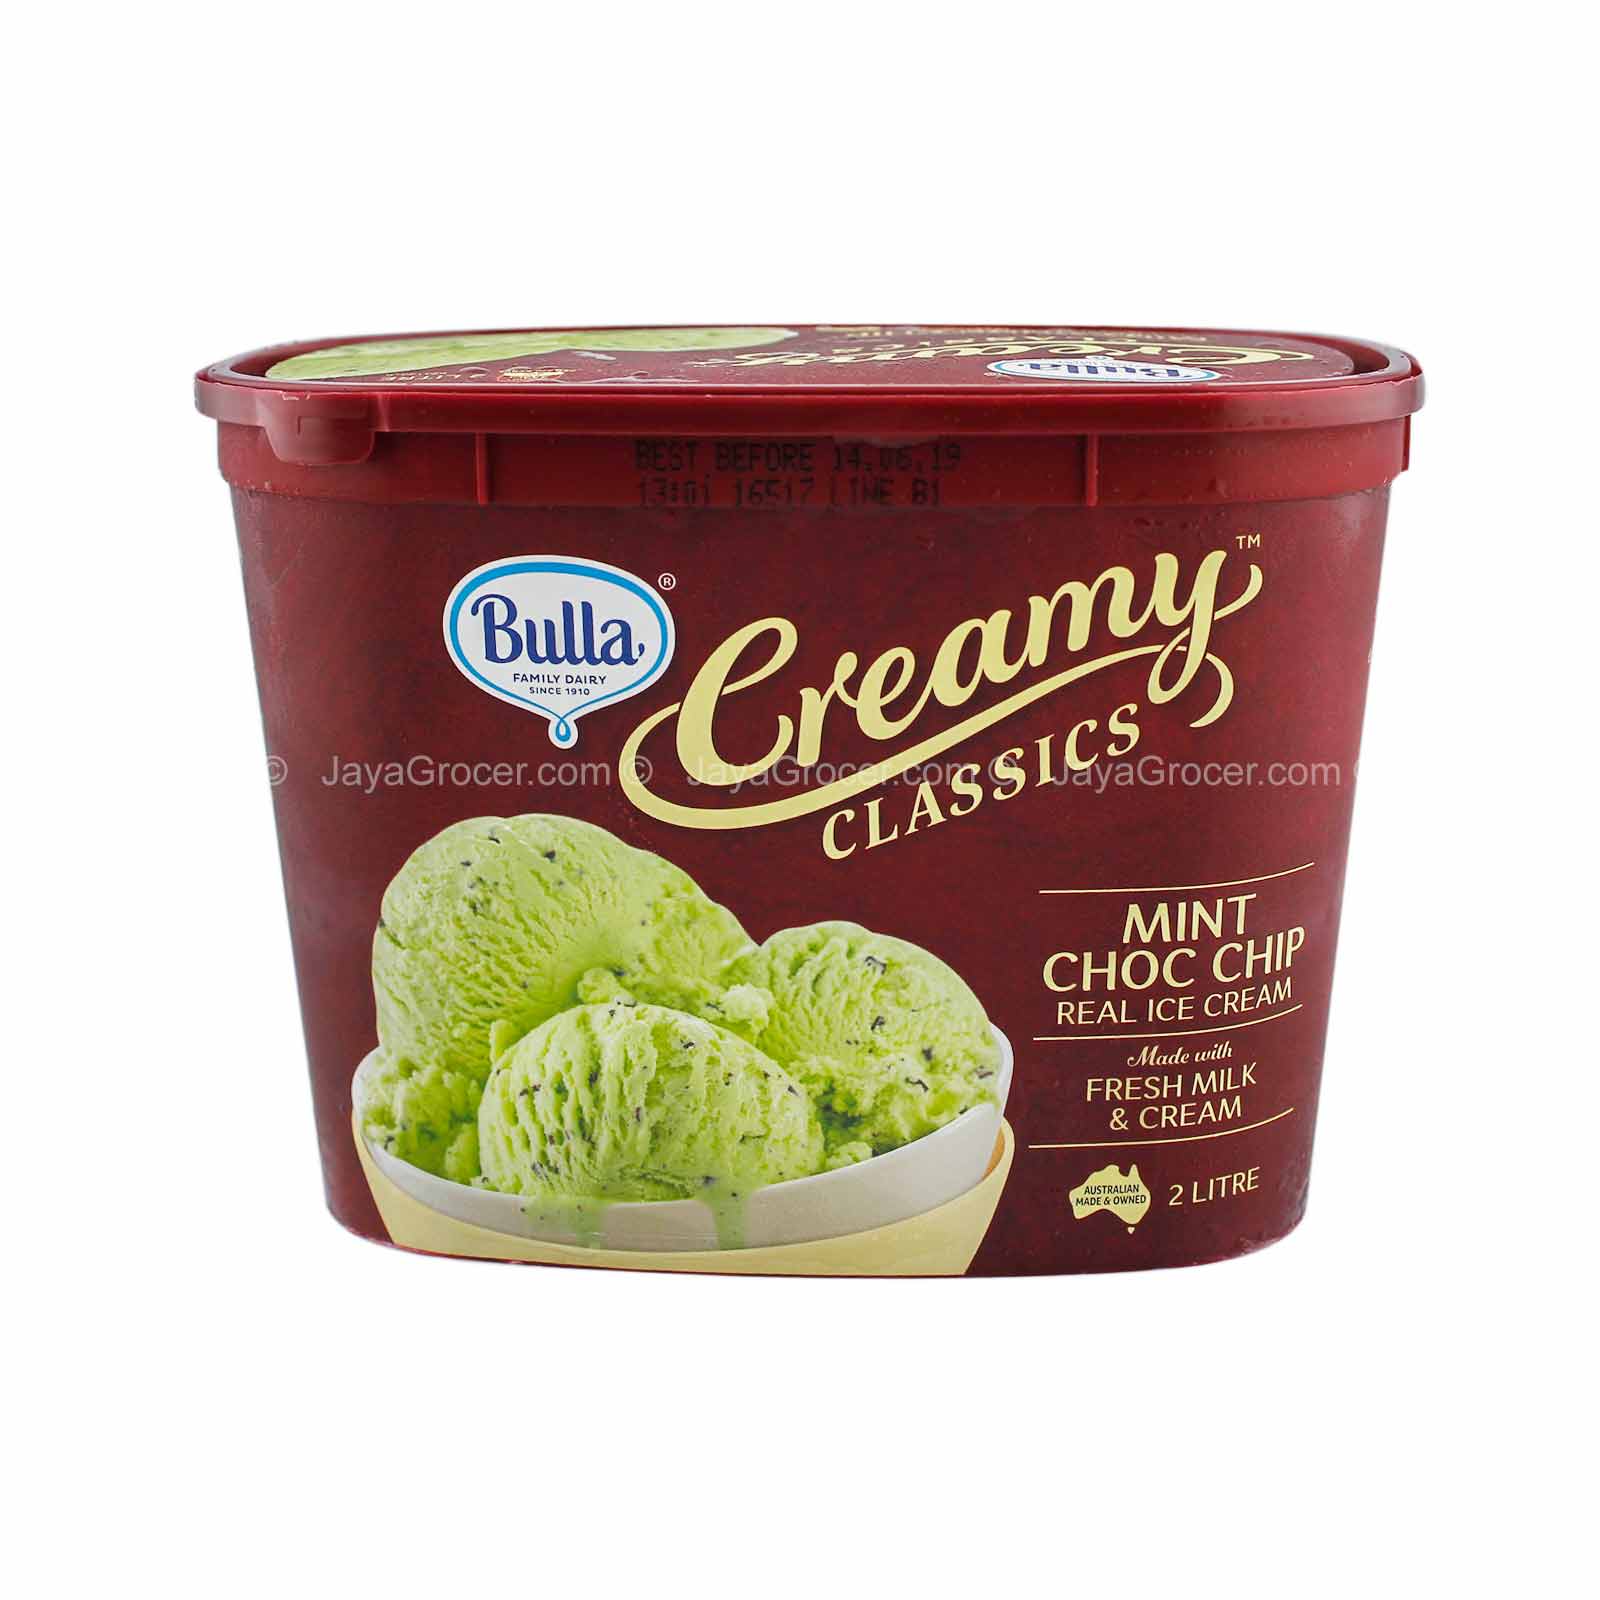 Creamy Mint Chocolate Chip Ice Cream